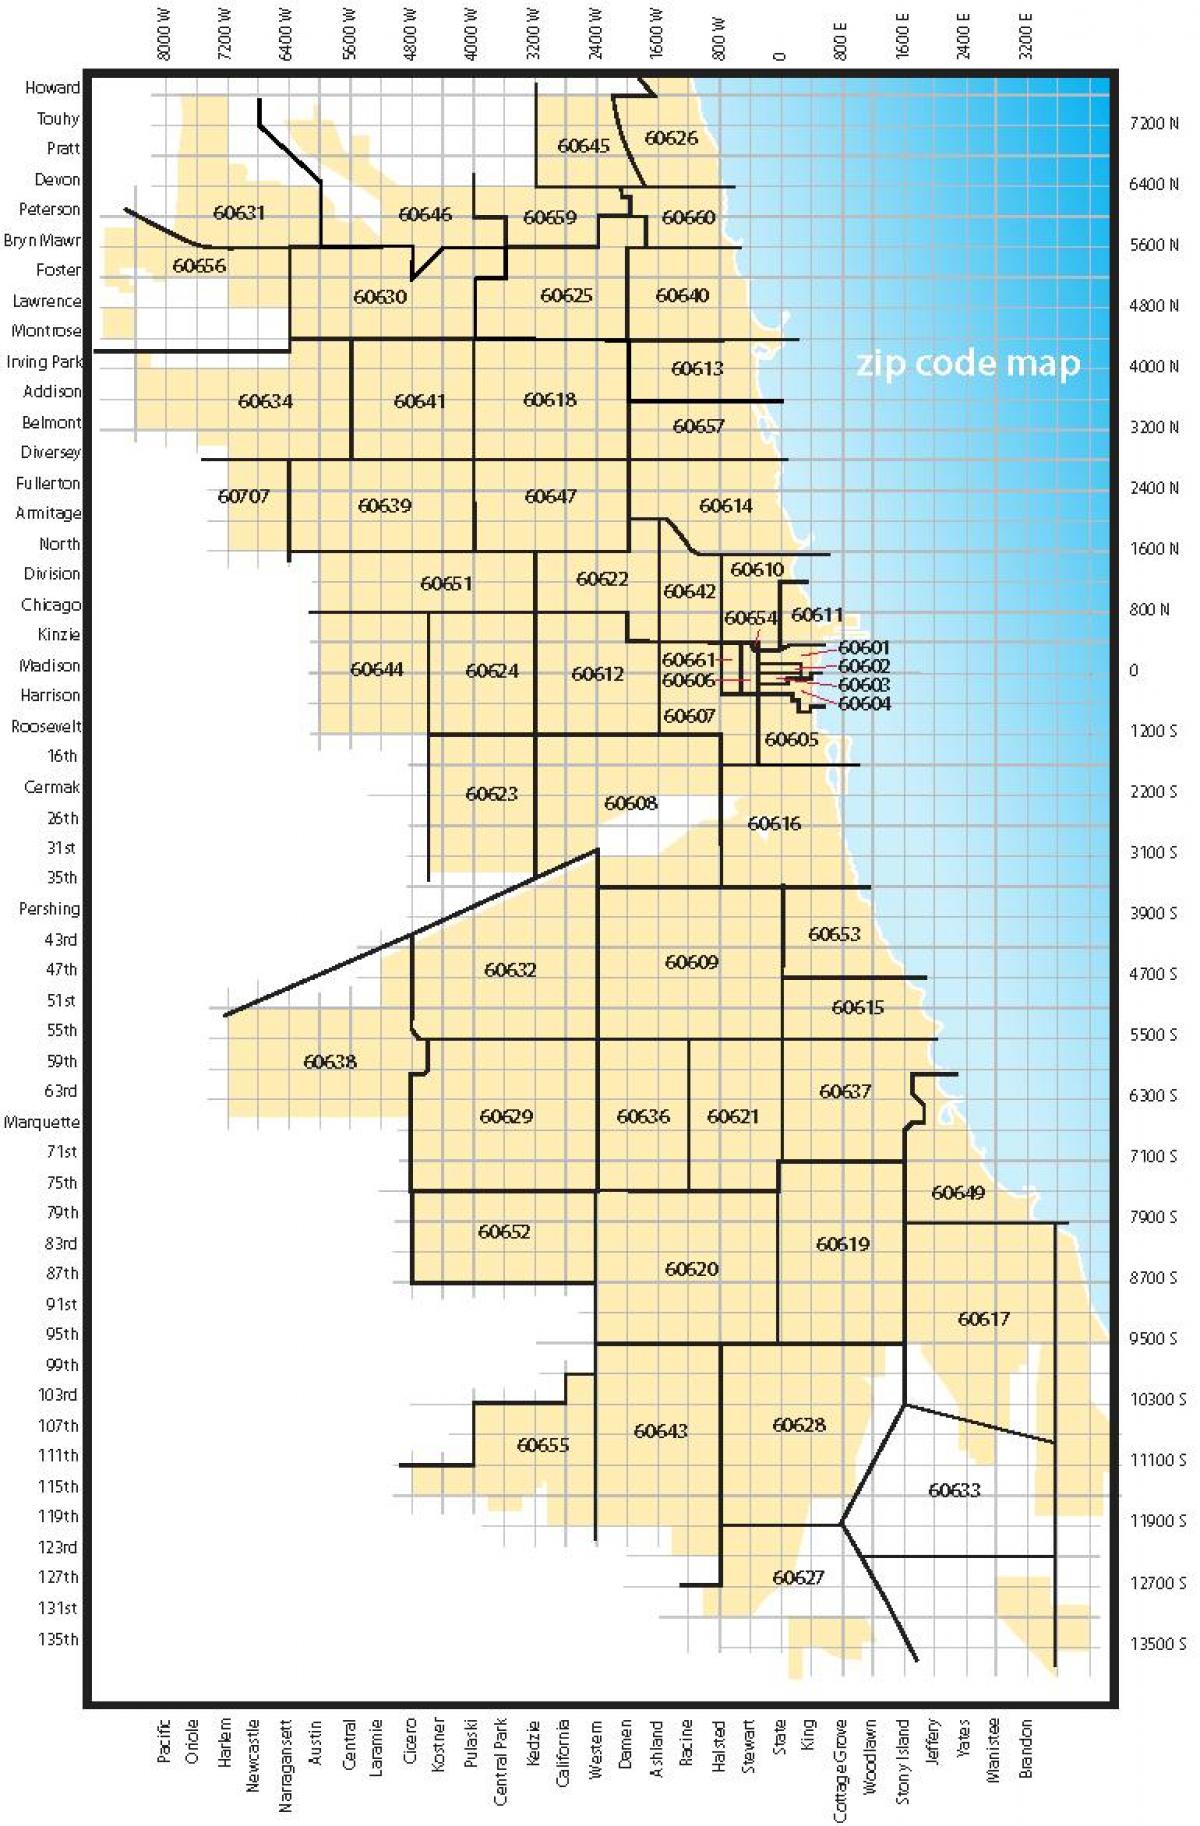 mapa de Chicago códigos postales